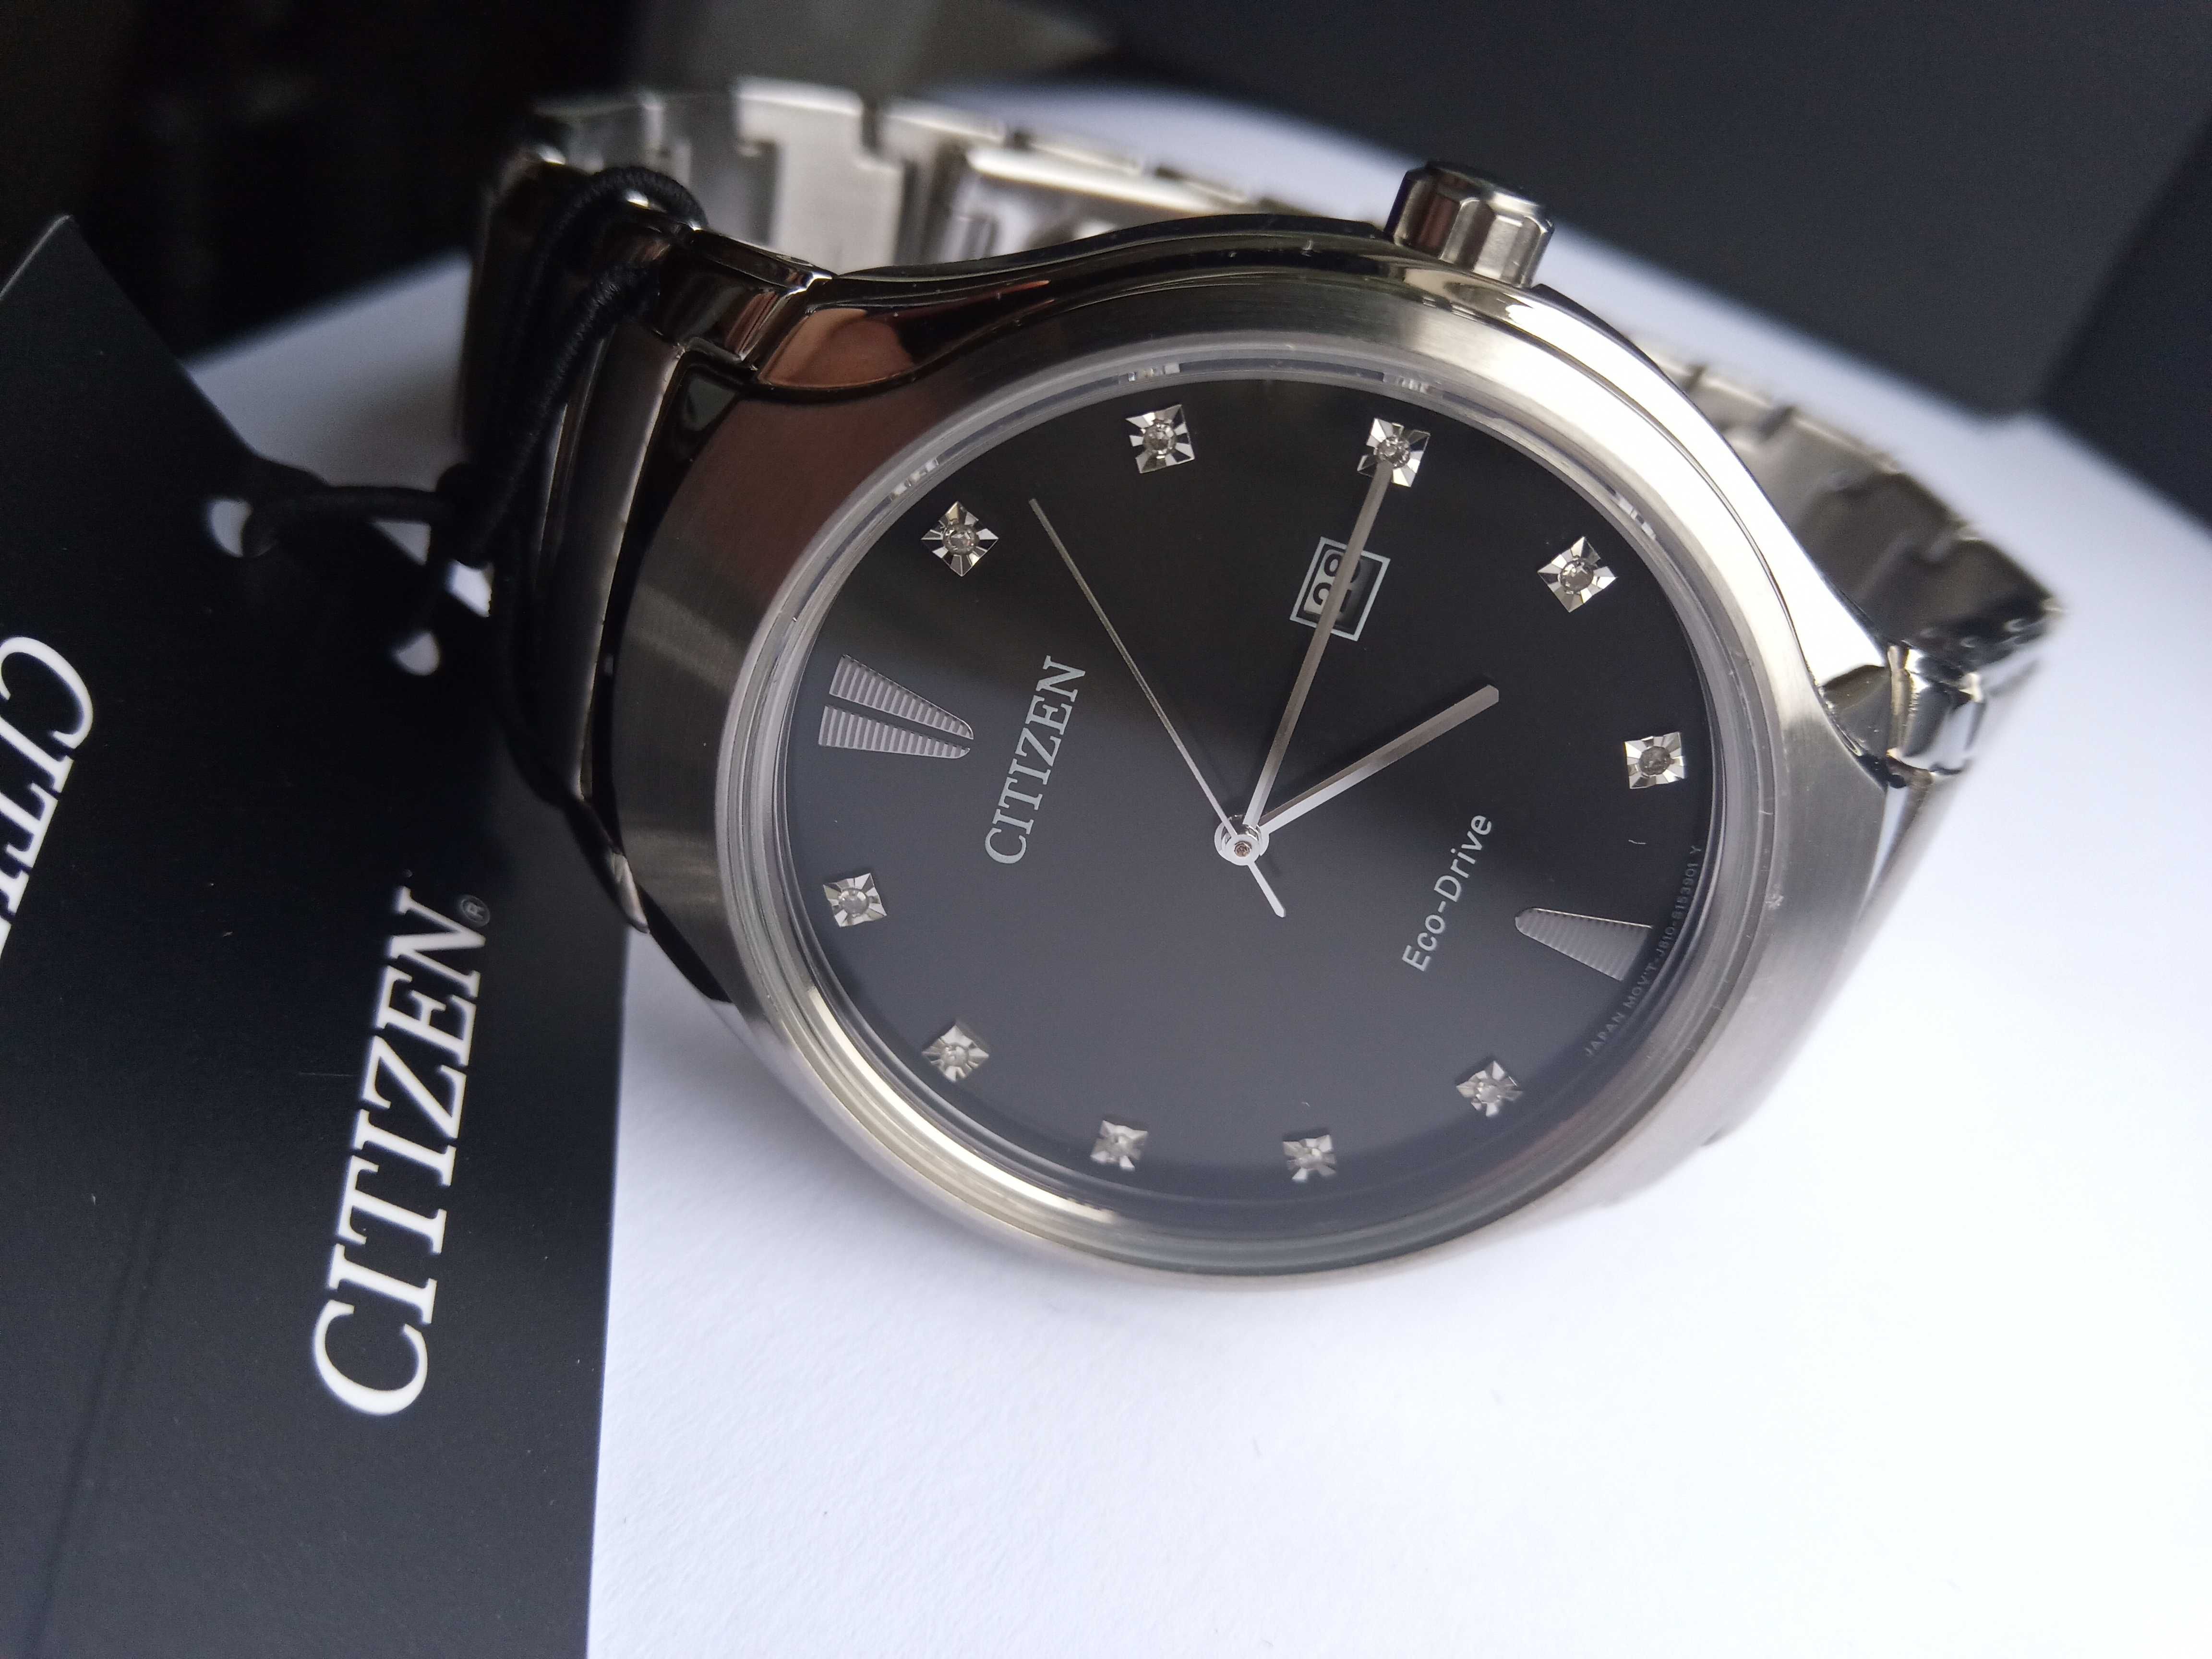 Citizen мужские часы с бриллиантовыми метками Eco-Drive AW1550-50E